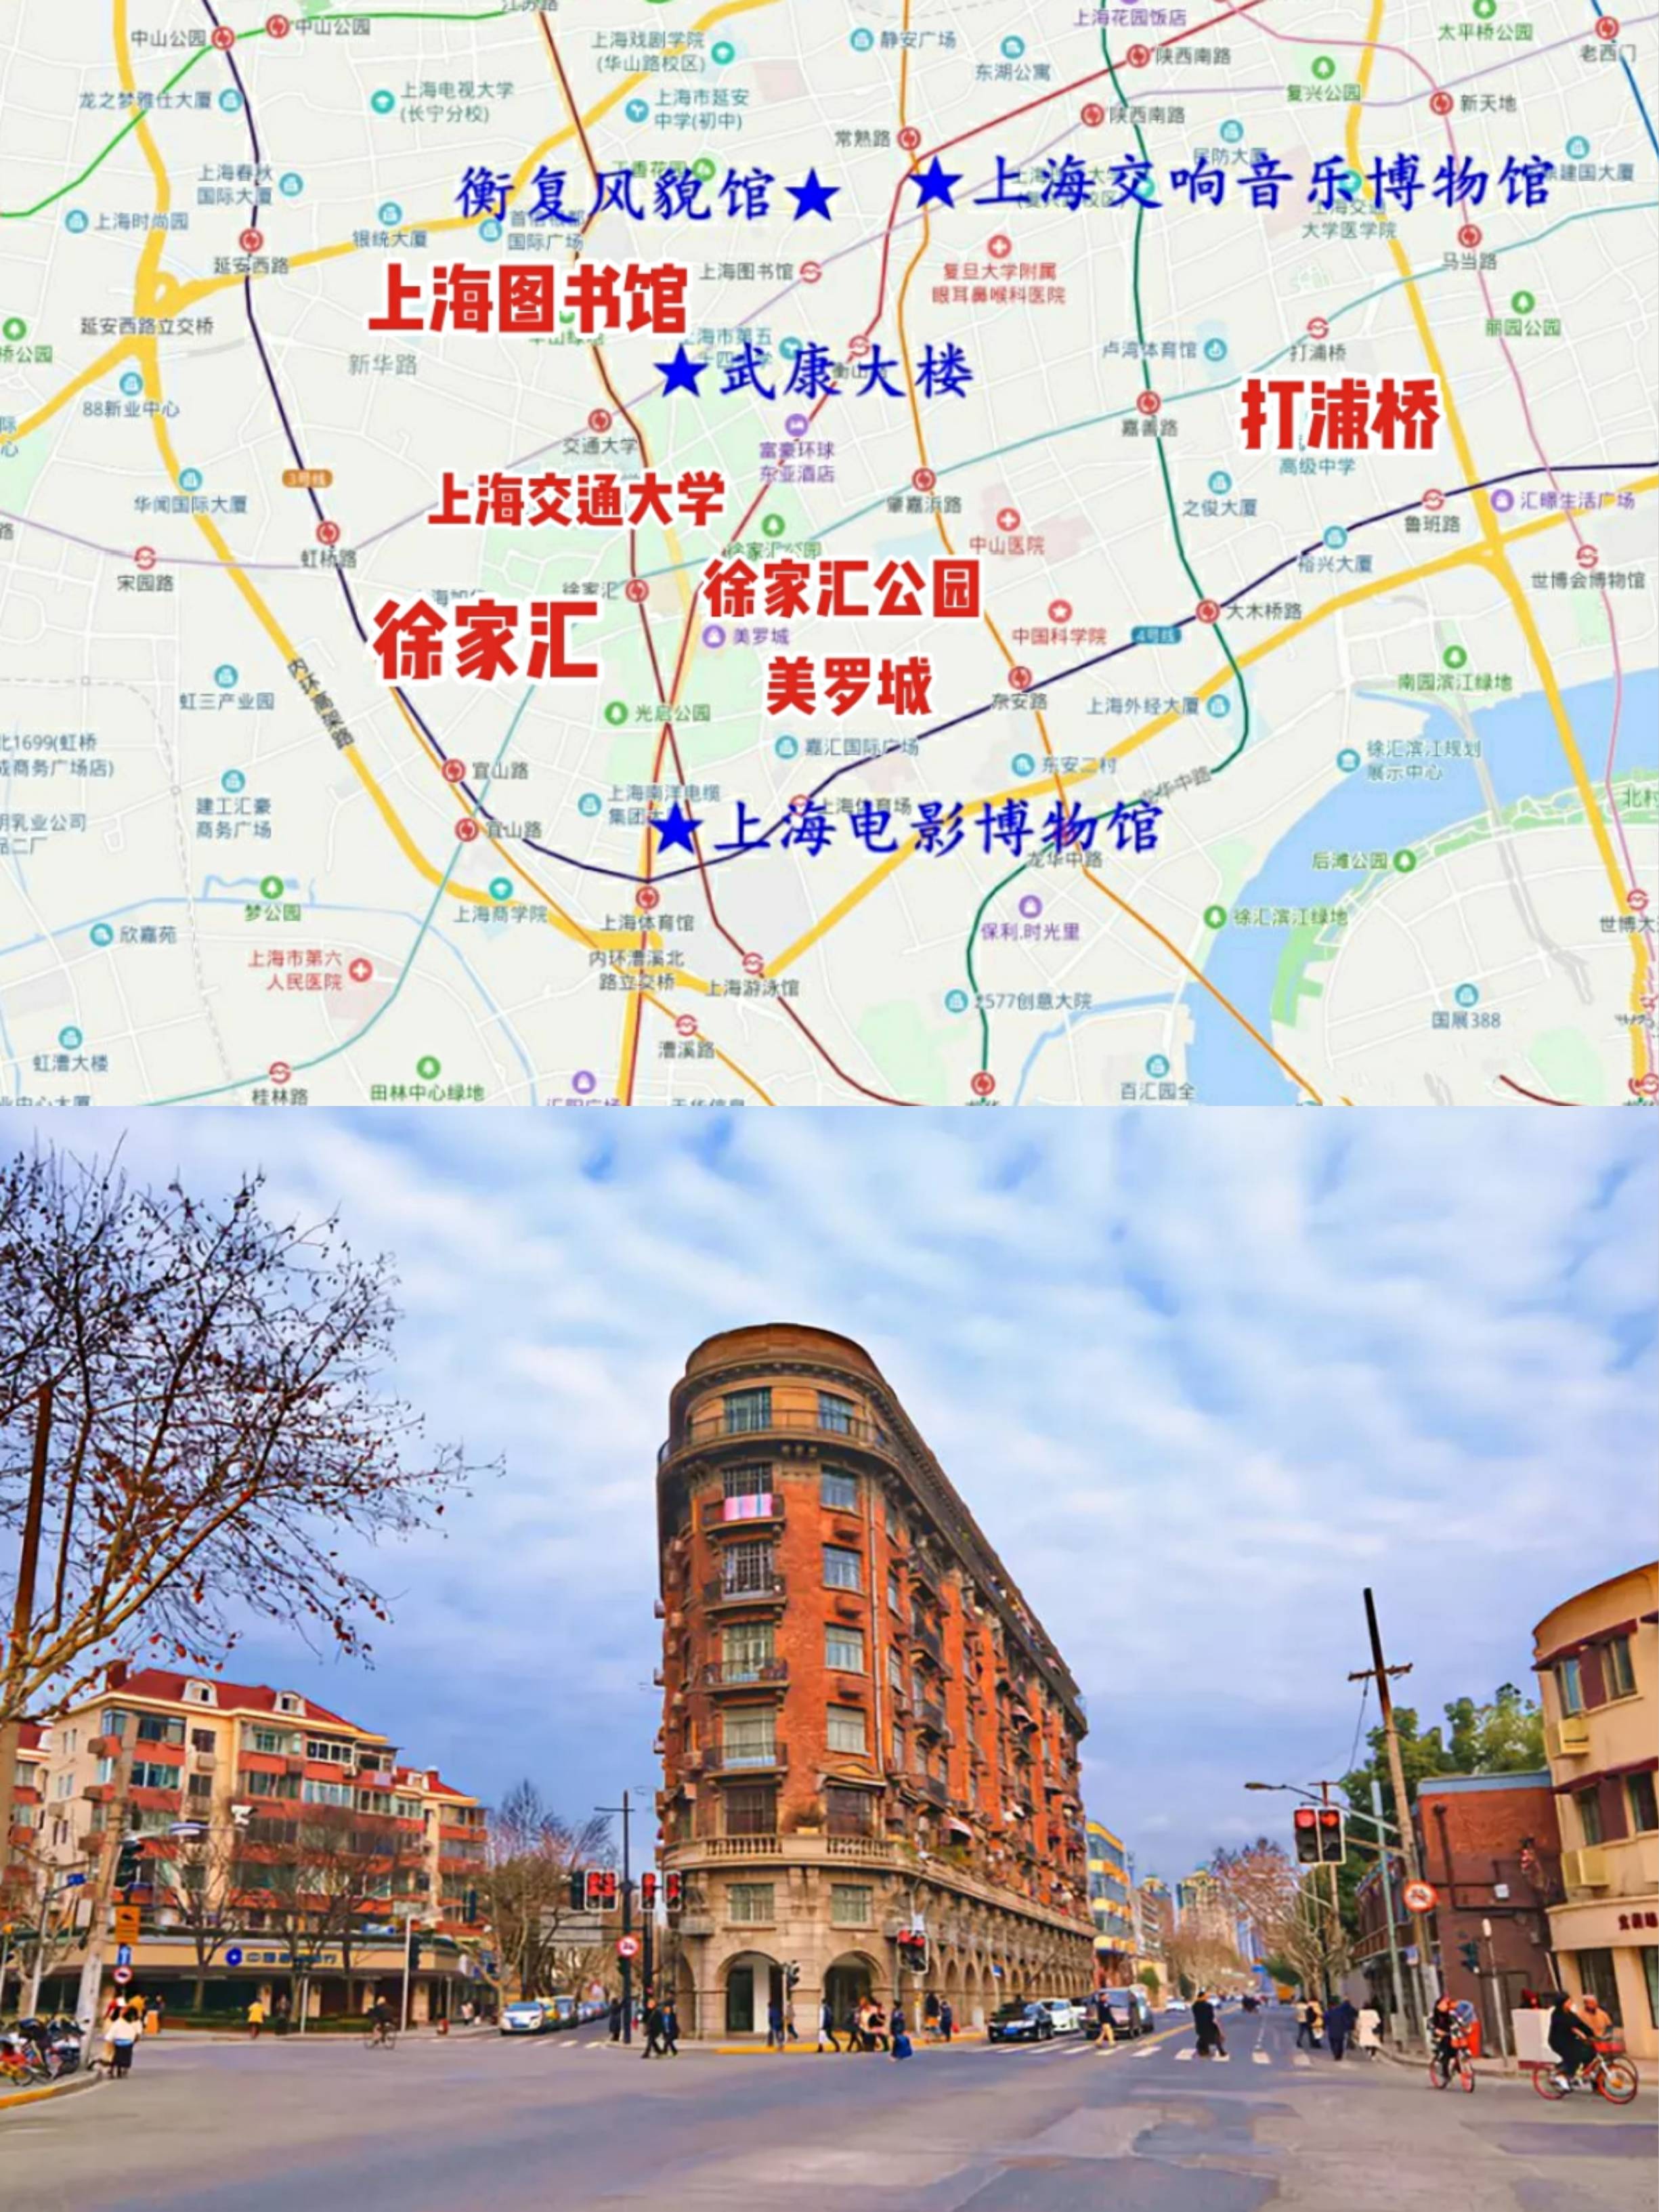 上海五一旅游景点门票上海美食行李寄存攻略